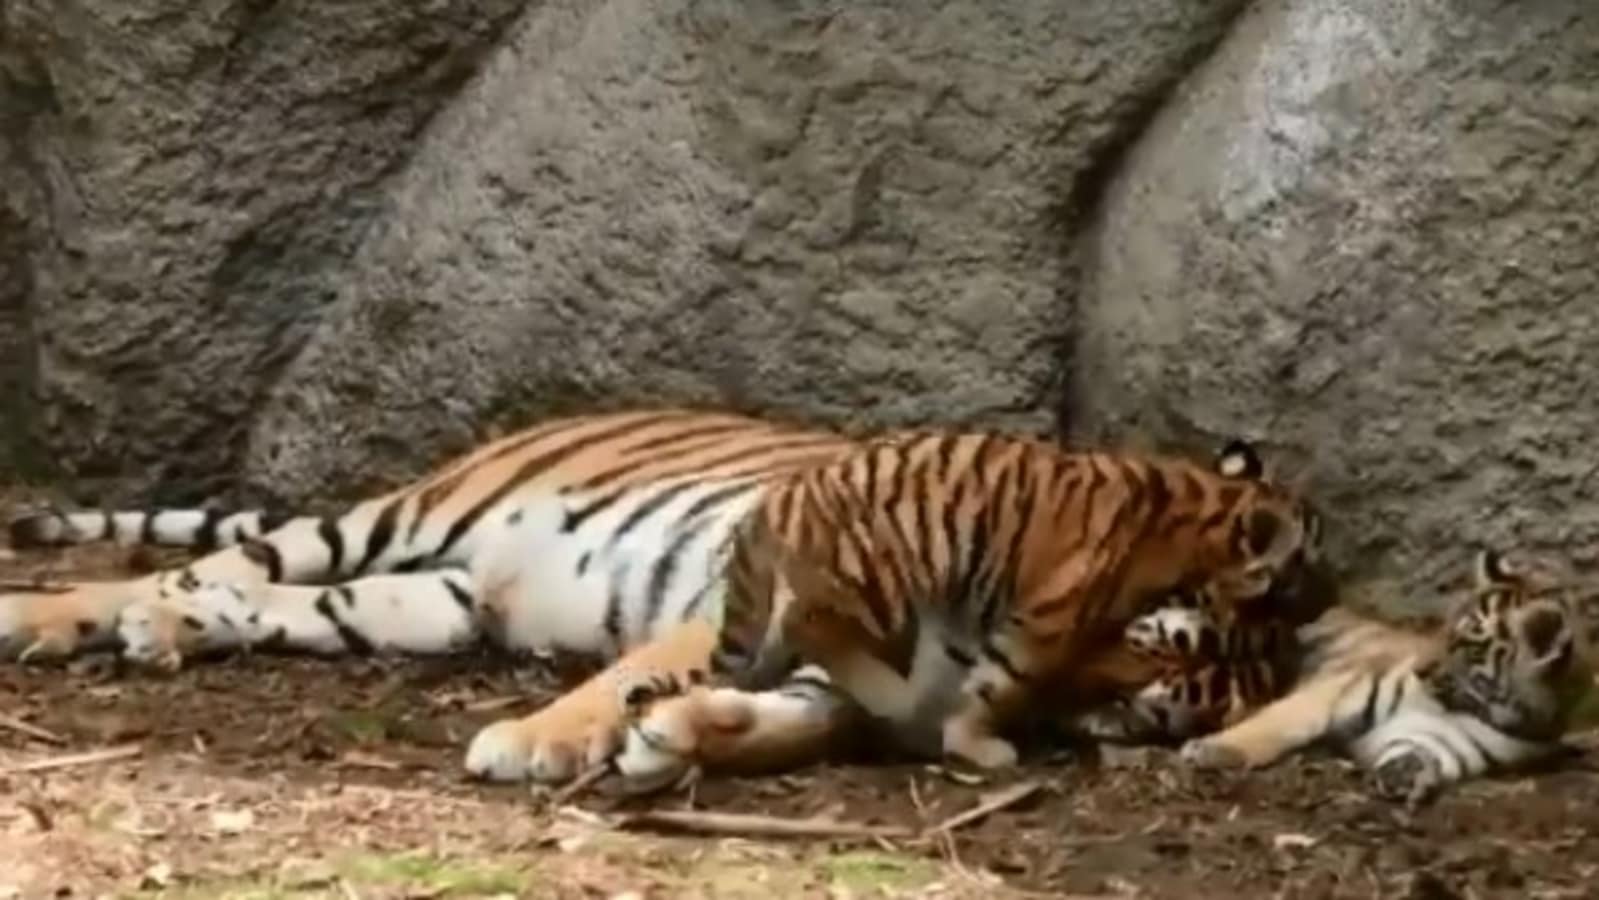 tiger cubs sleeping